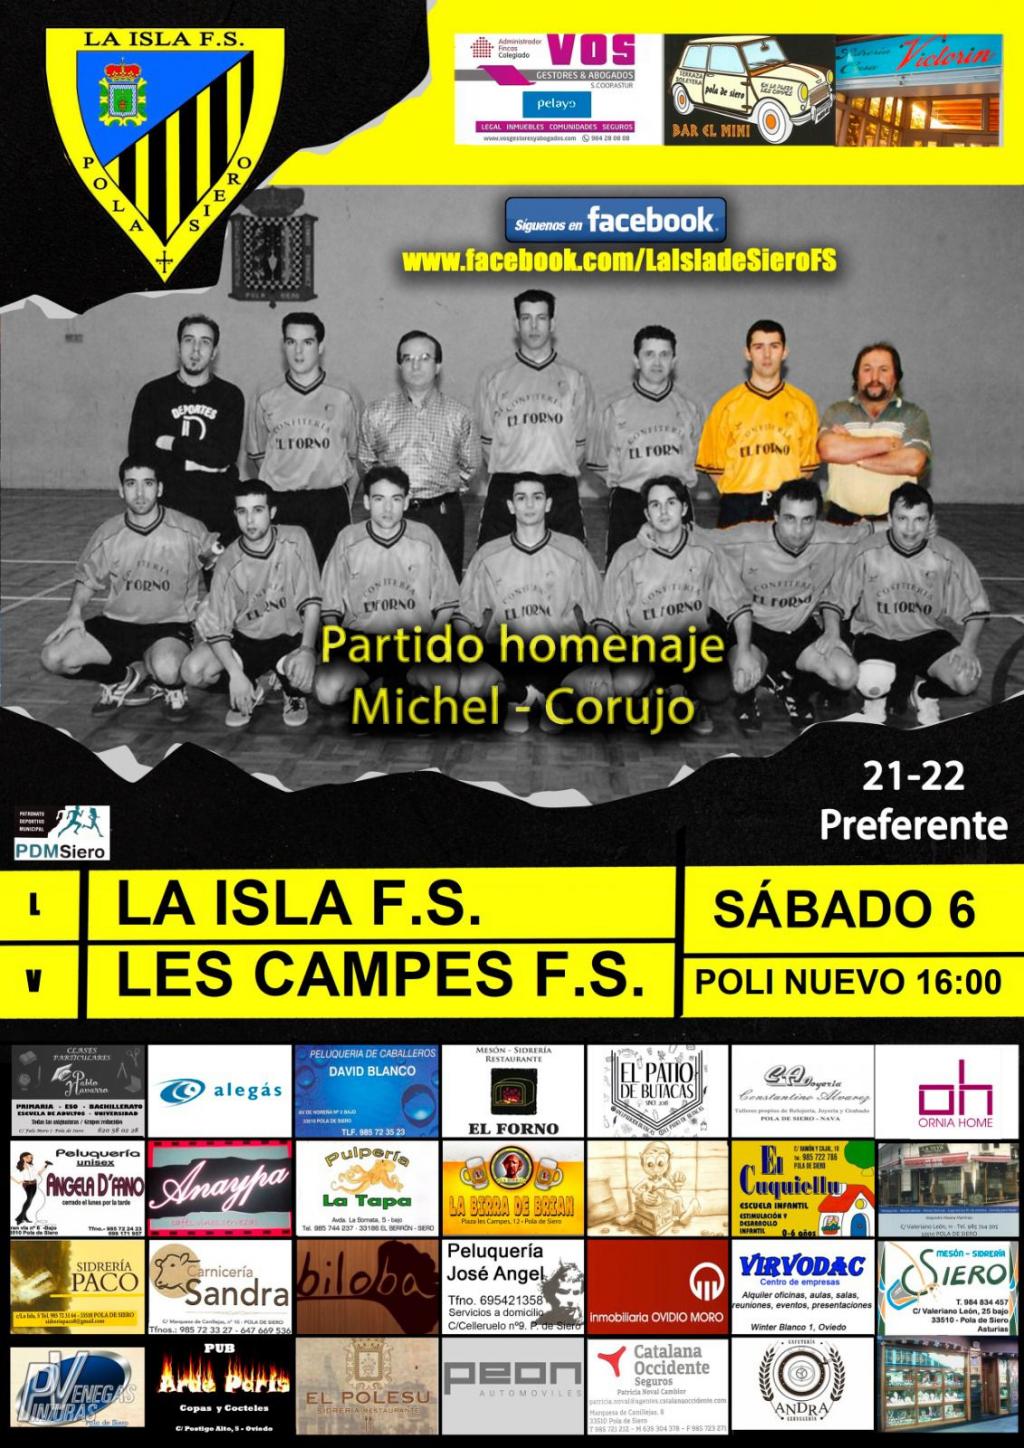 El Tapin - El club de fútbol sala La Isla homenajeará este sábado 6 noviembre a “Corujo” y “Michel” antes del derbi contra Les Campes en el polideportivo nuevo de Pola